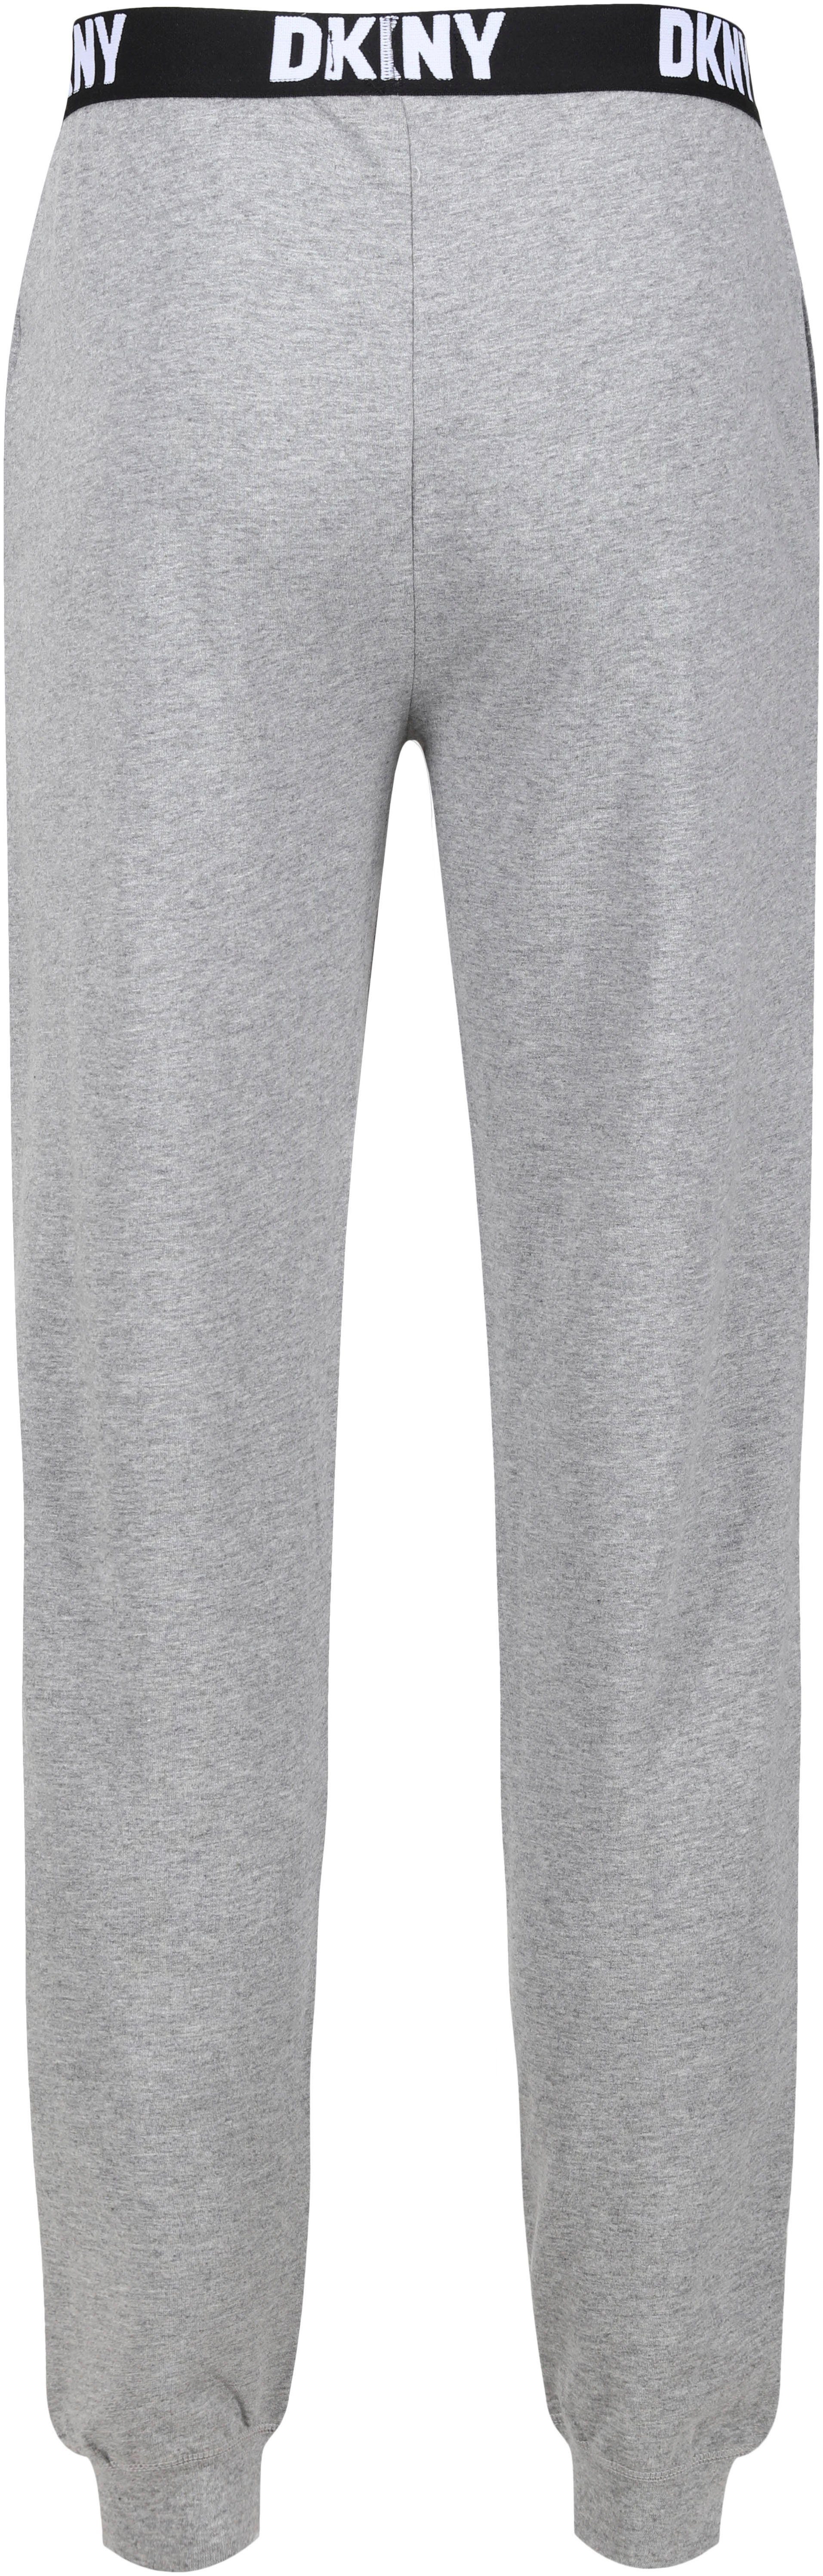 Loungepants grey DKNY elastischem mit Logo-Bündchen